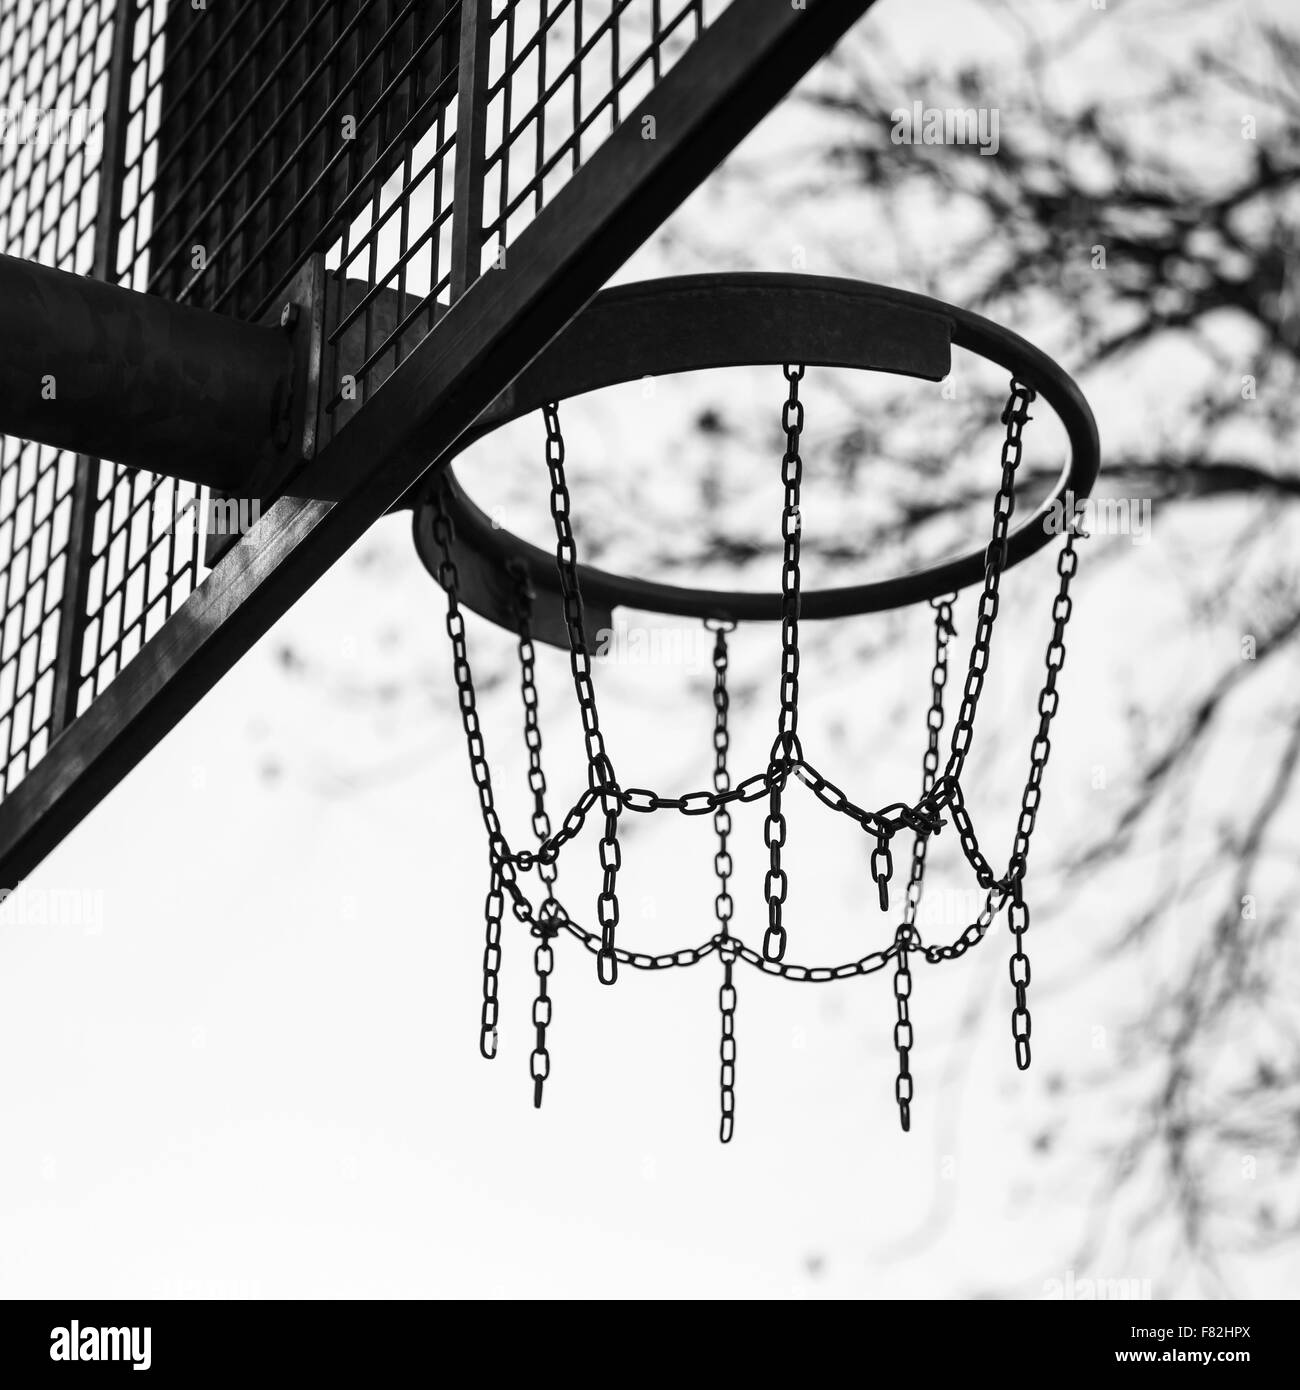 Panier fait de chaînes pour le jeu de basket-ball sur l'aire de jeux dans un parc de la ville, photo en noir et blanc Banque D'Images